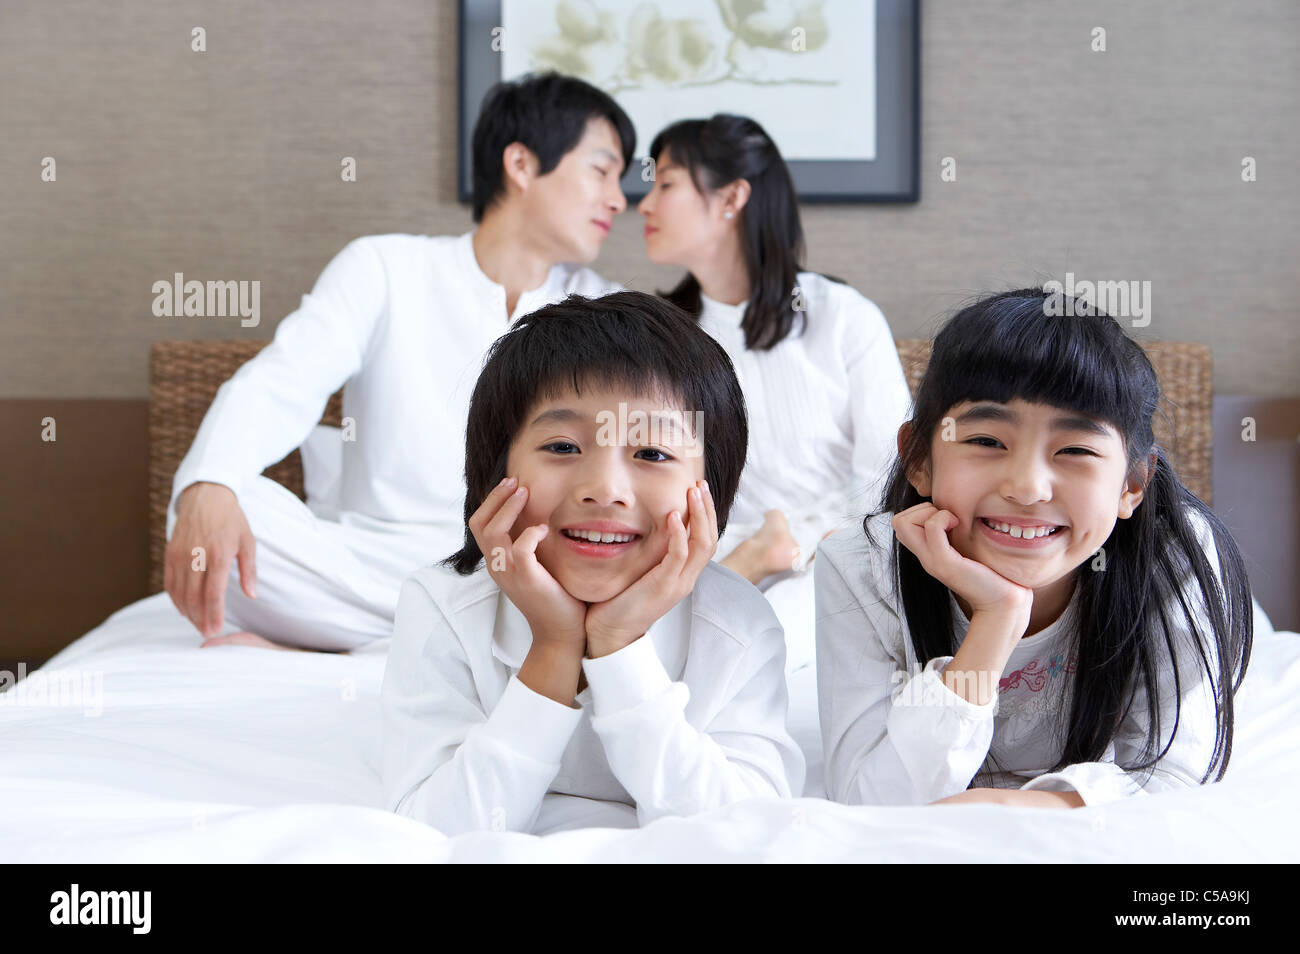 Close-up of enfants sourire, tandis que les parents s'embrasser en arrière-plan Banque D'Images